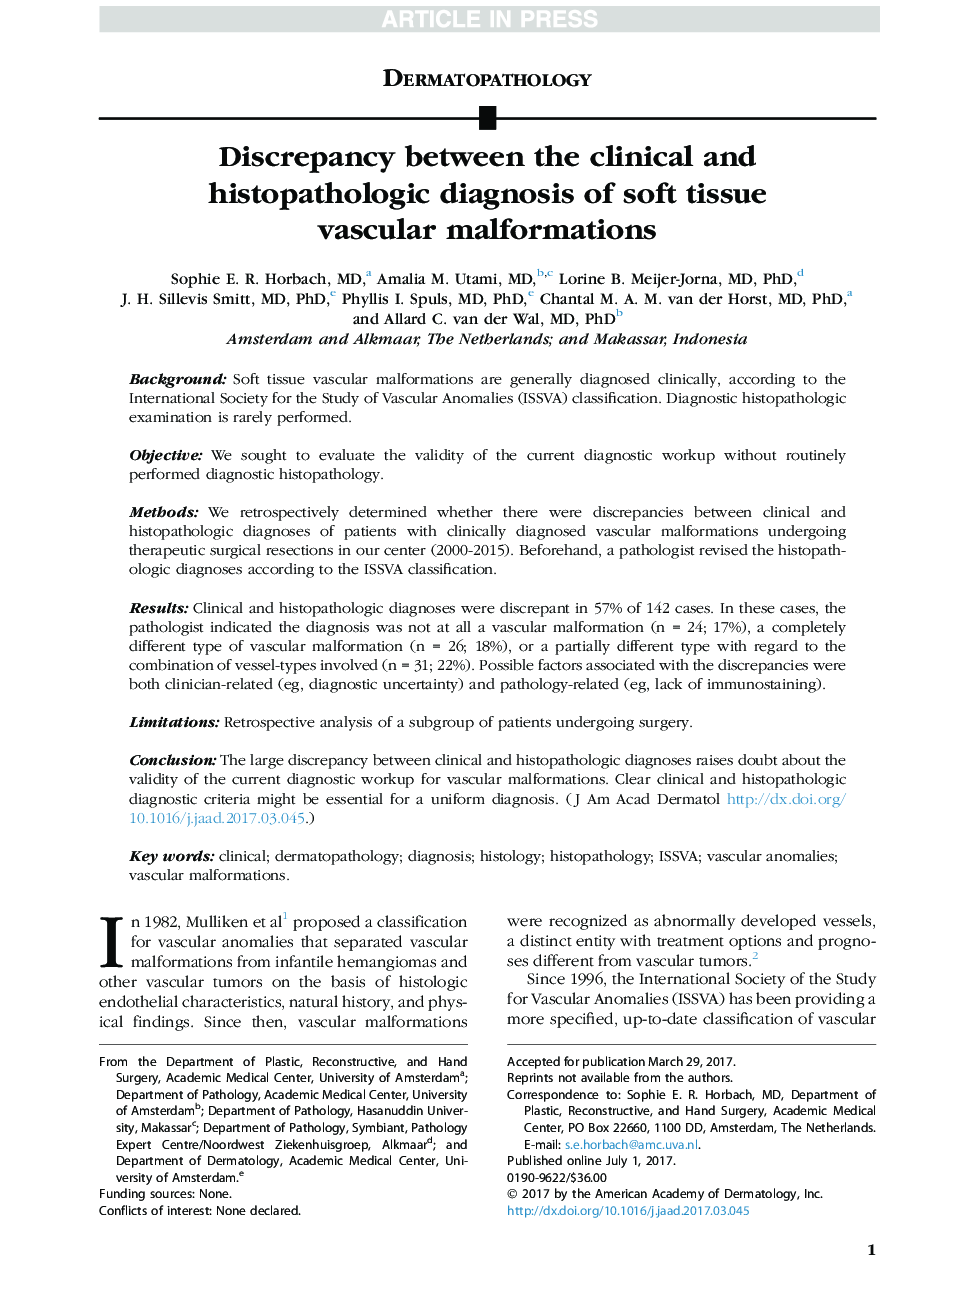 اختلاف بین تشخیص بالینی و هیستوپاتولوژیک ناهنجاری های عروقی بافت نرم 